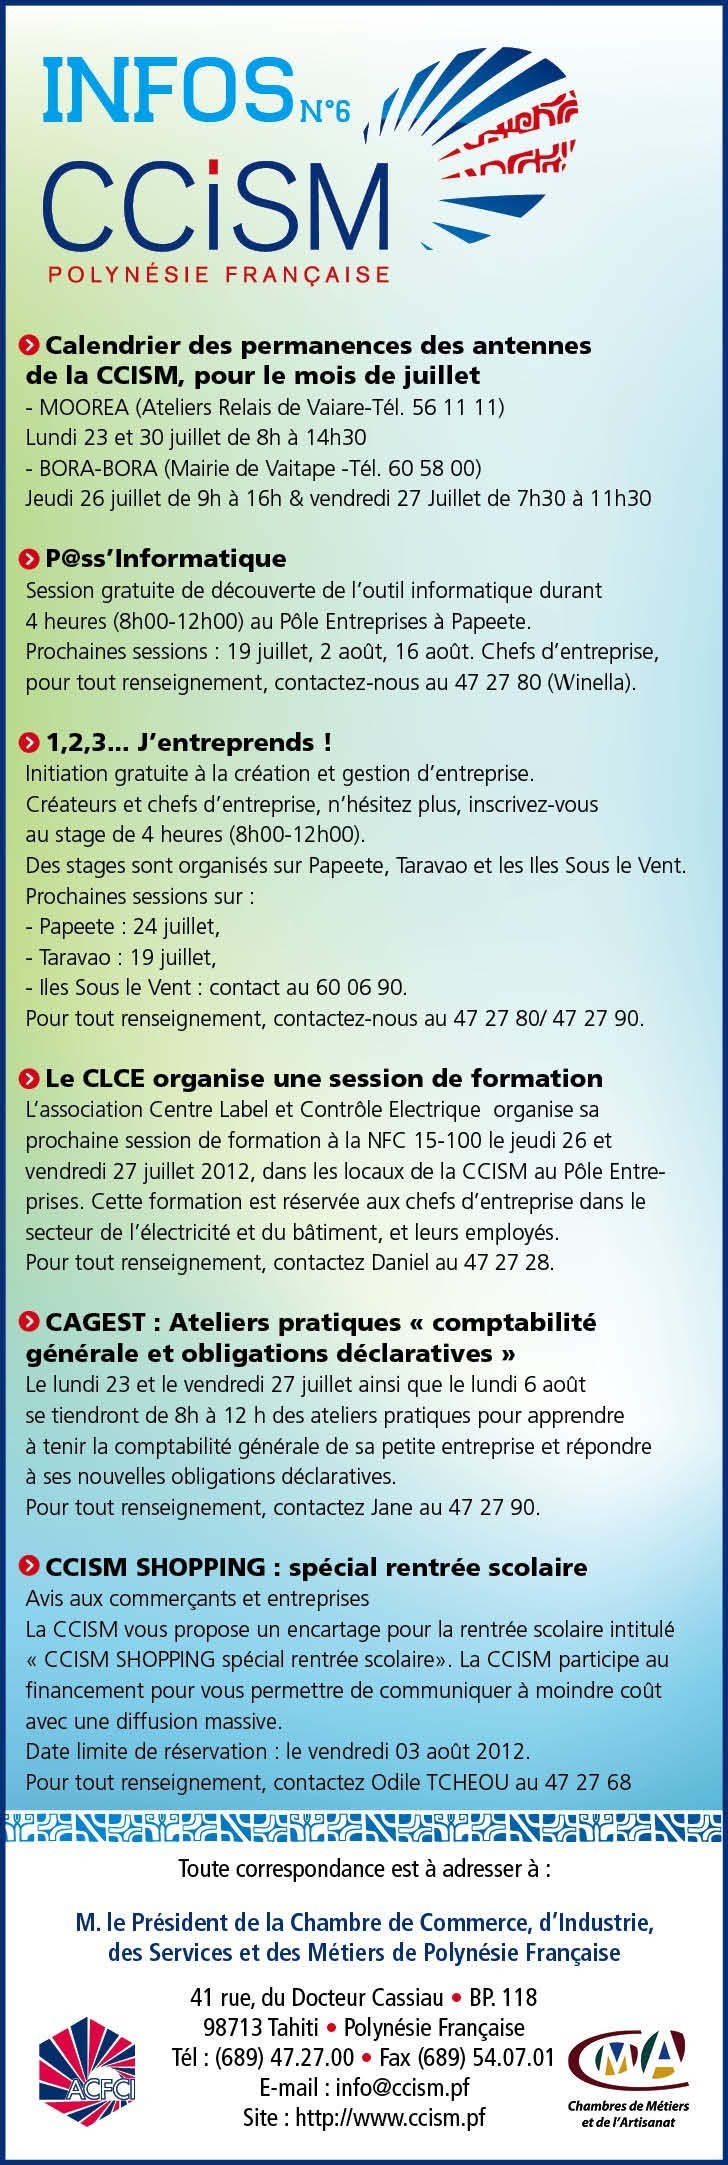 Infos CCISM N°6